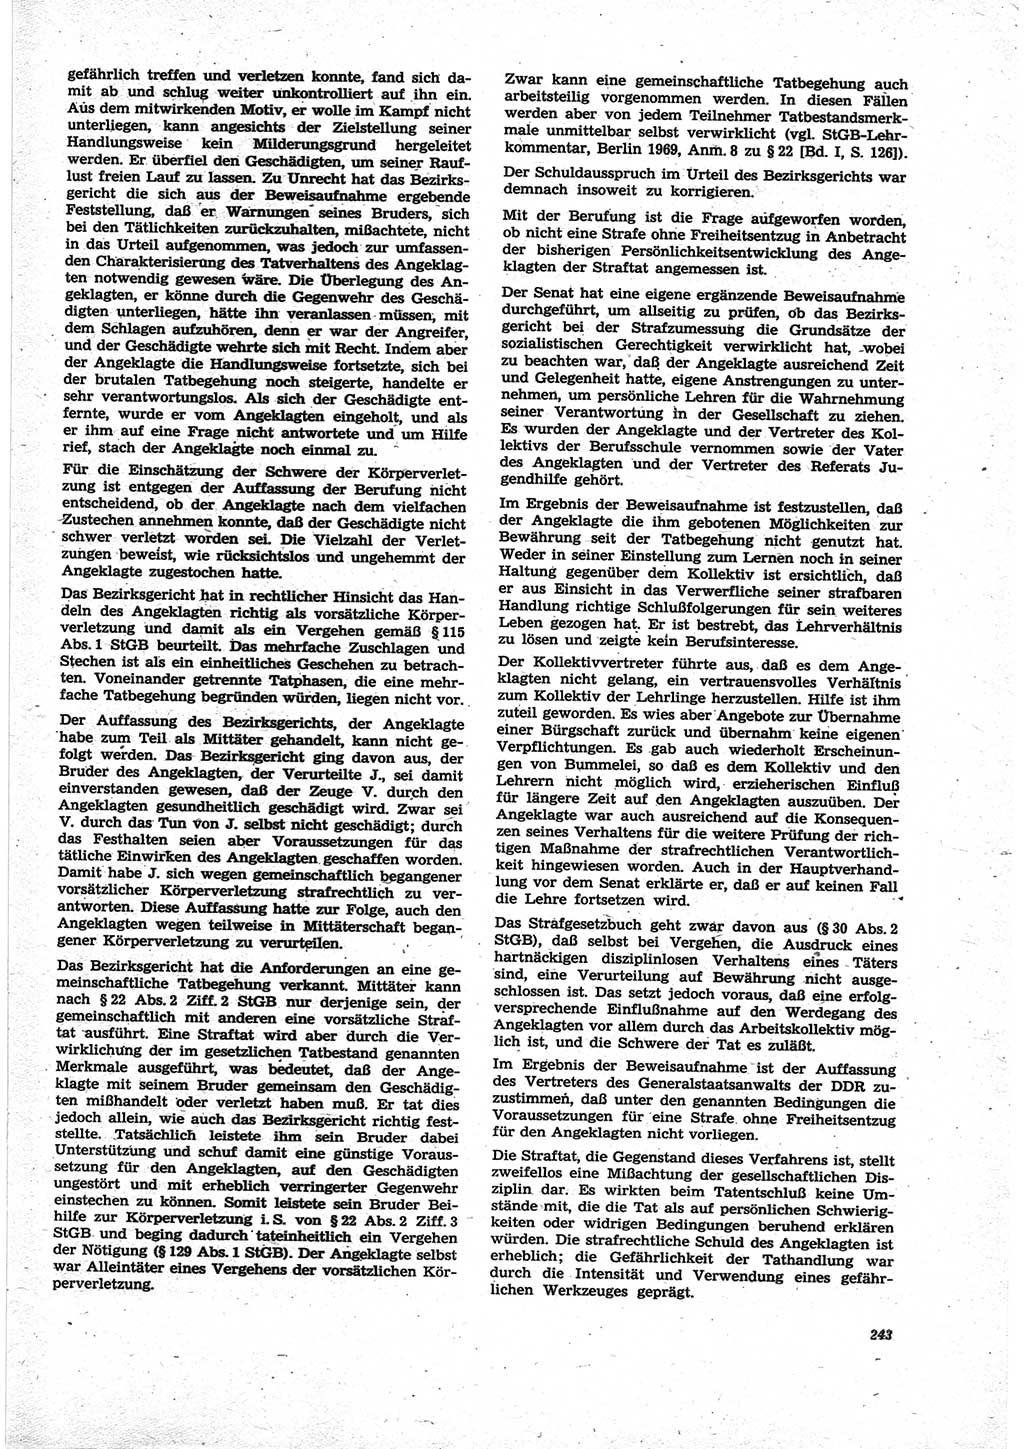 Neue Justiz (NJ), Zeitschrift für Recht und Rechtswissenschaft [Deutsche Demokratische Republik (DDR)], 25. Jahrgang 1971, Seite 243 (NJ DDR 1971, S. 243)